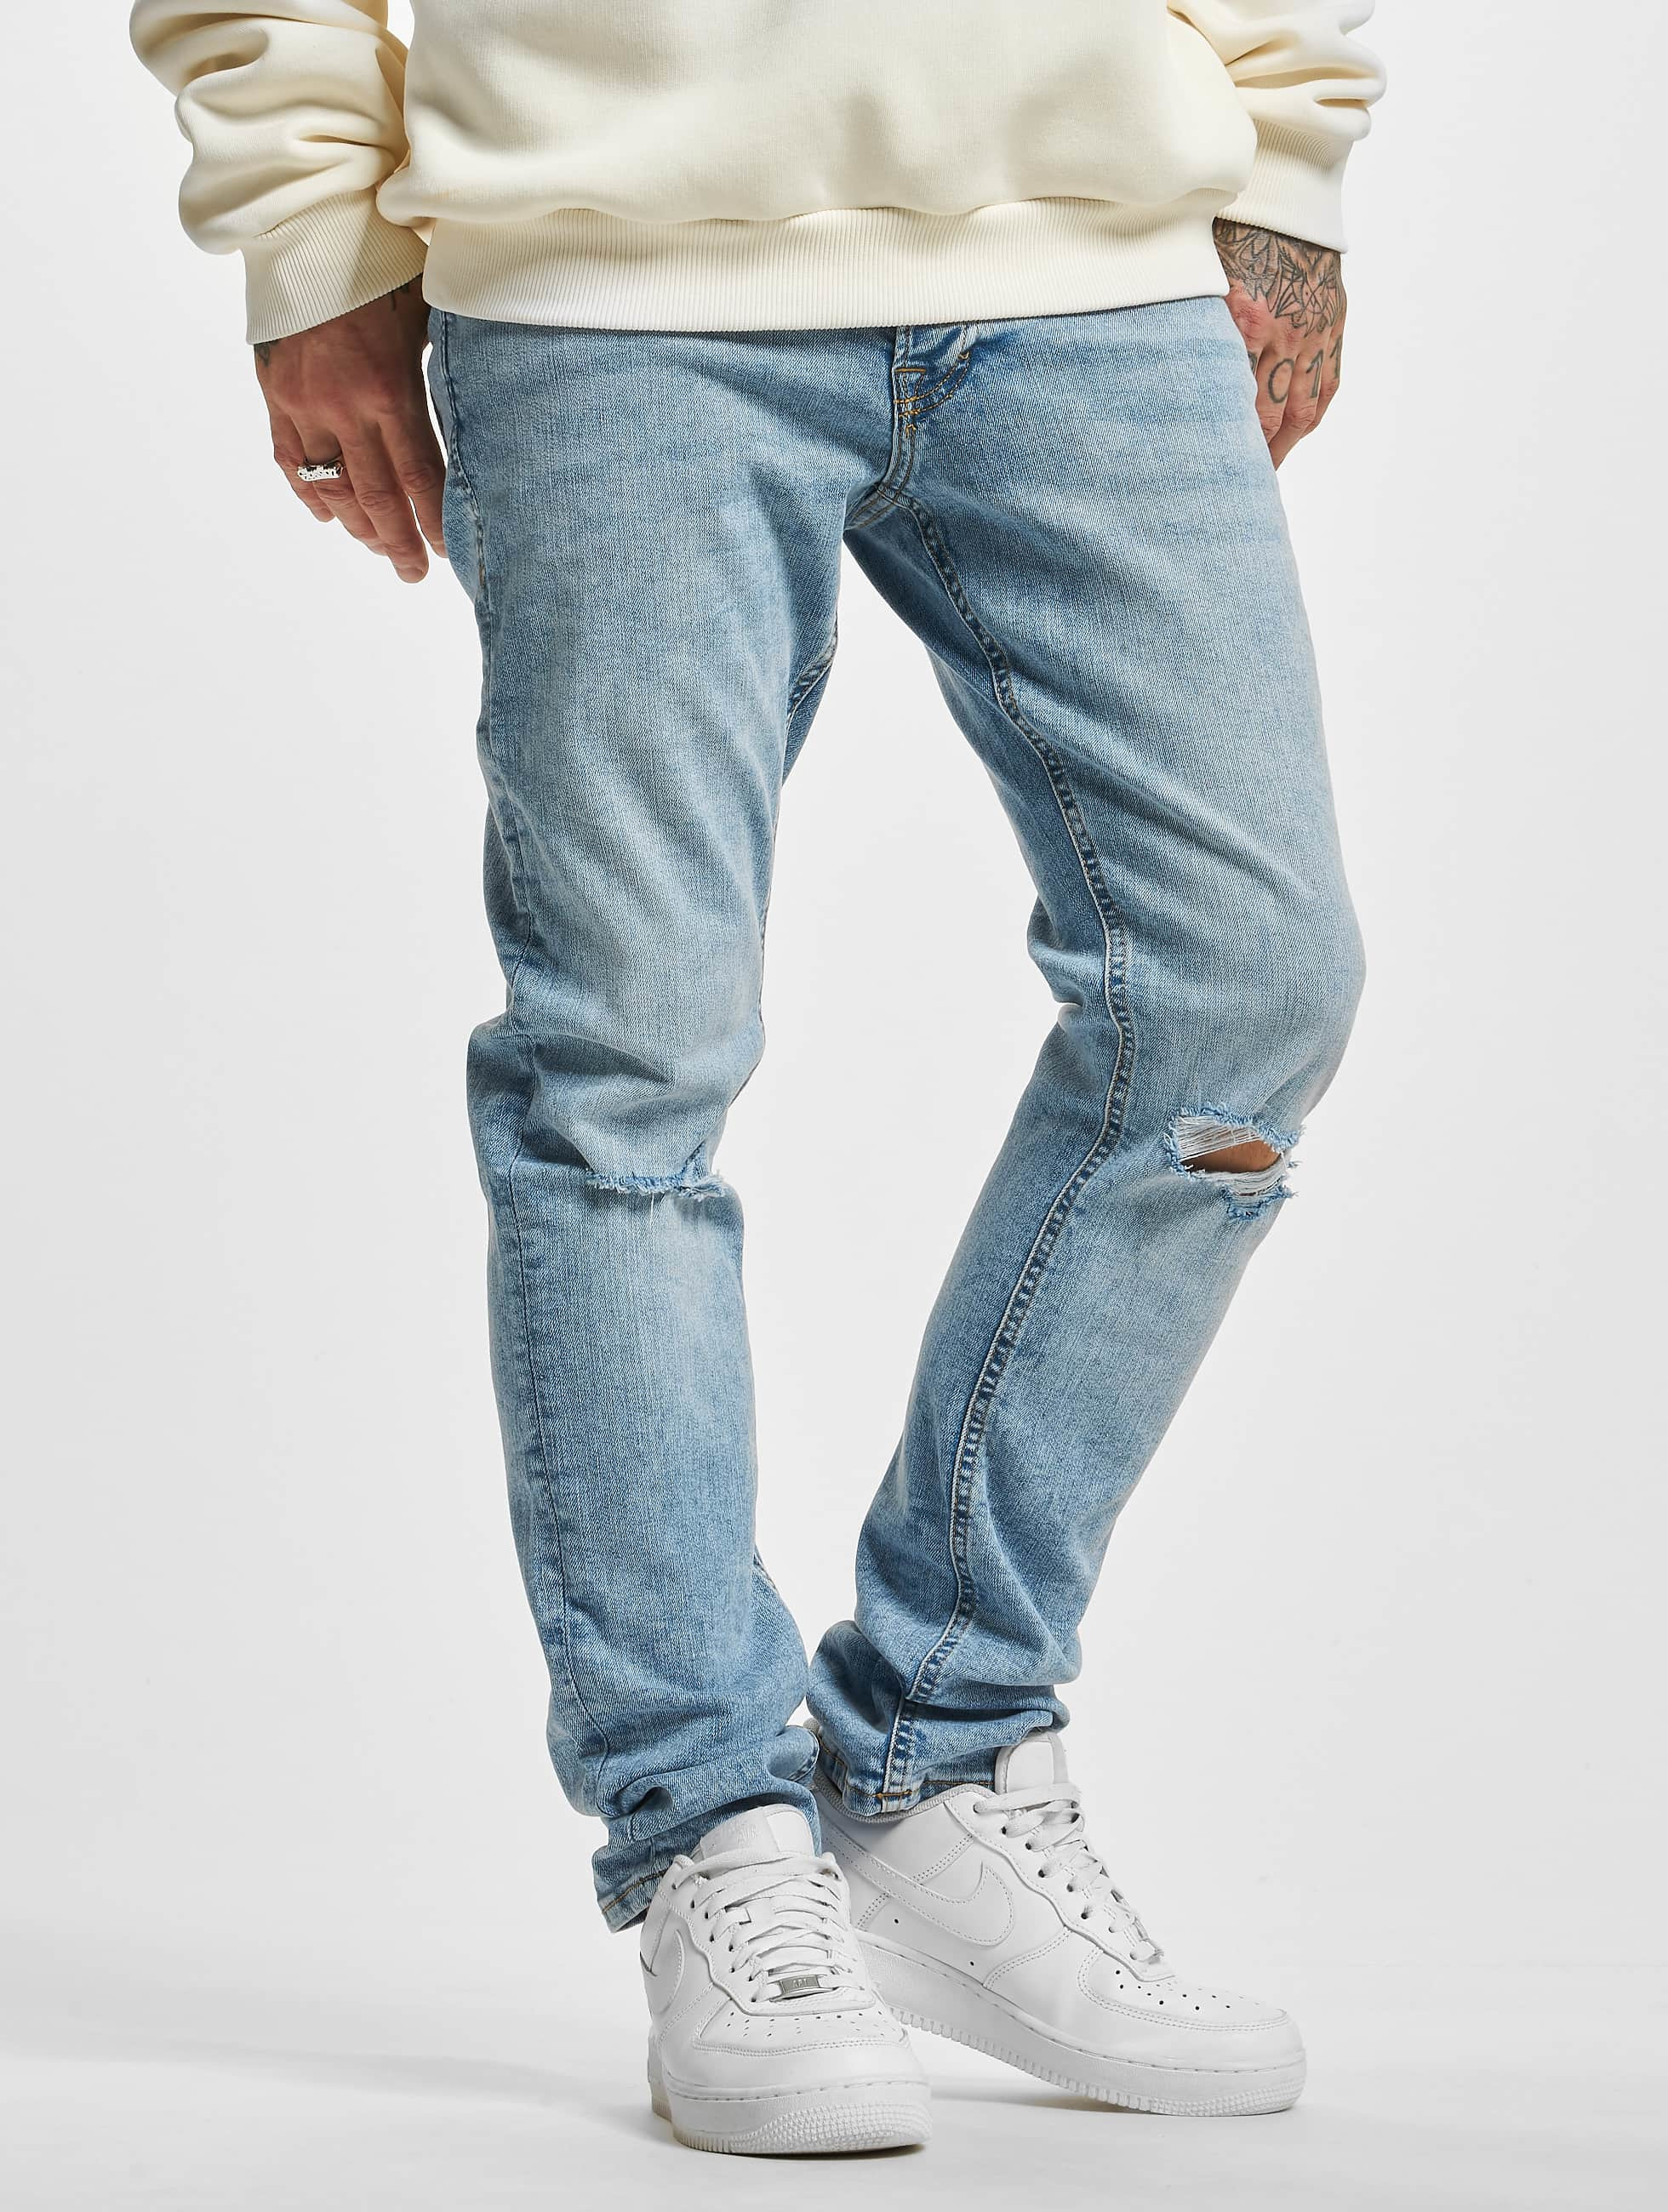 Noord Uitvoerder Chemie Jack & Jones Jeans / Slim Fit Jeans Glenn Original in blauw 941100